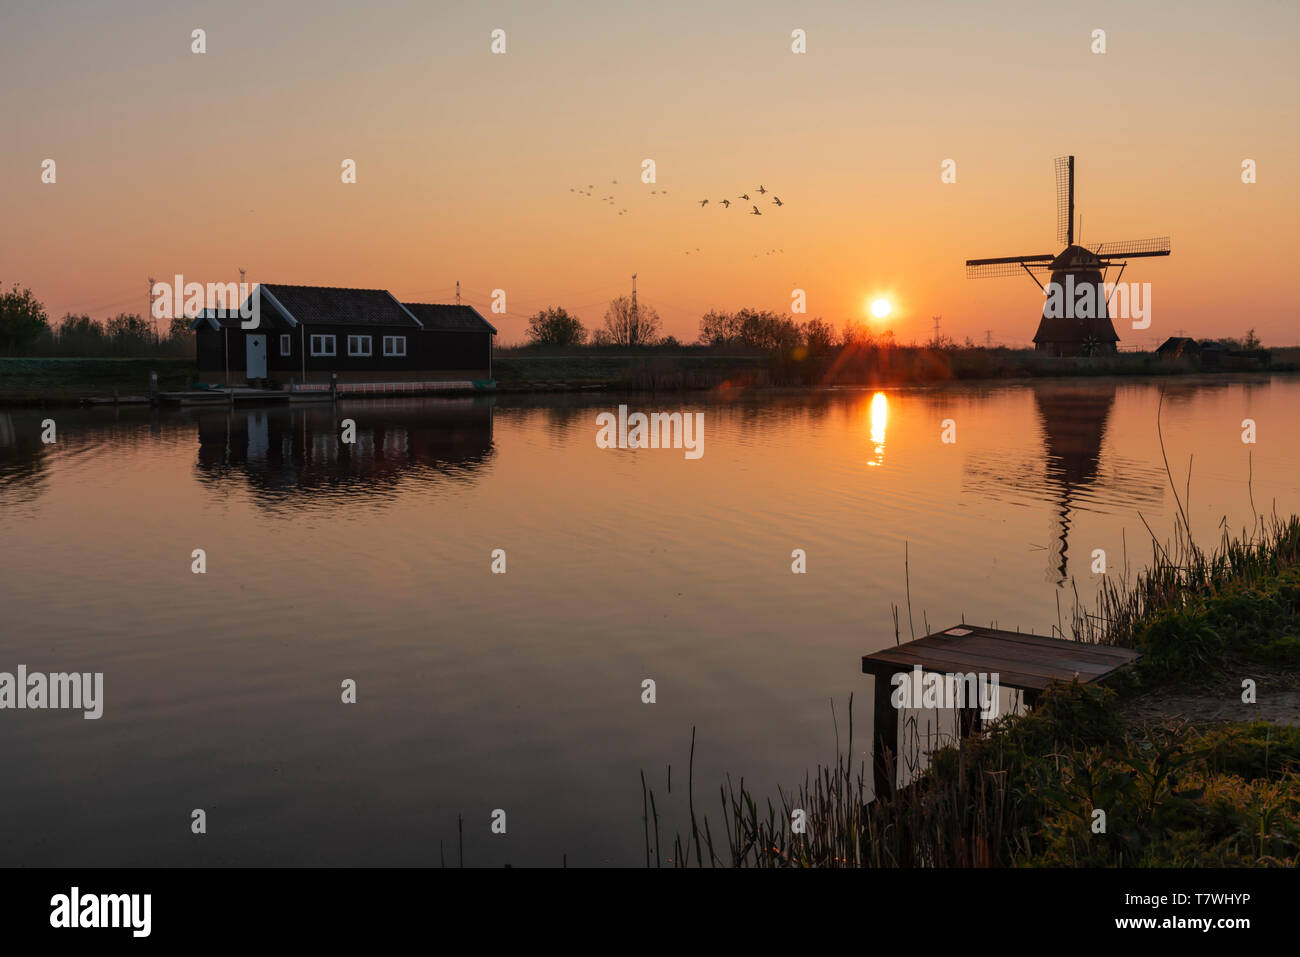 Laden Plattform am Rand mit dem ruhigen Wasser des langen Kanals während mit Blick auf eine Windmühle Reflexion in der Brennen sunrise Farbe morgen Stockfoto